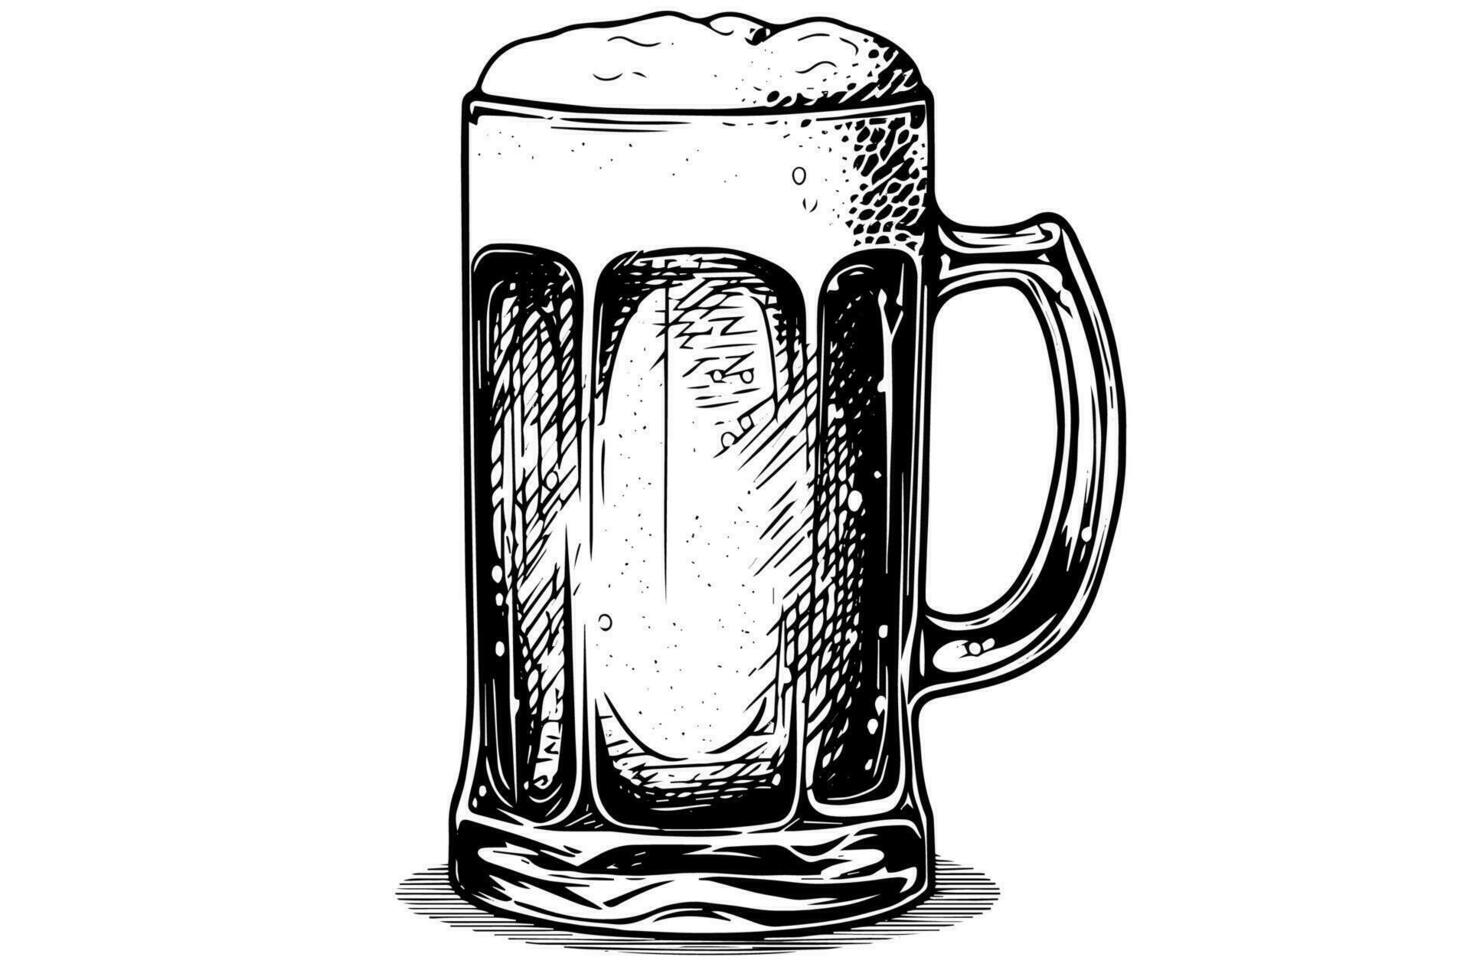 bier glas met ale en weelderig schuim.hand getrokken inkt schetsen. gravure wijnoogst stijl vector illustratie.